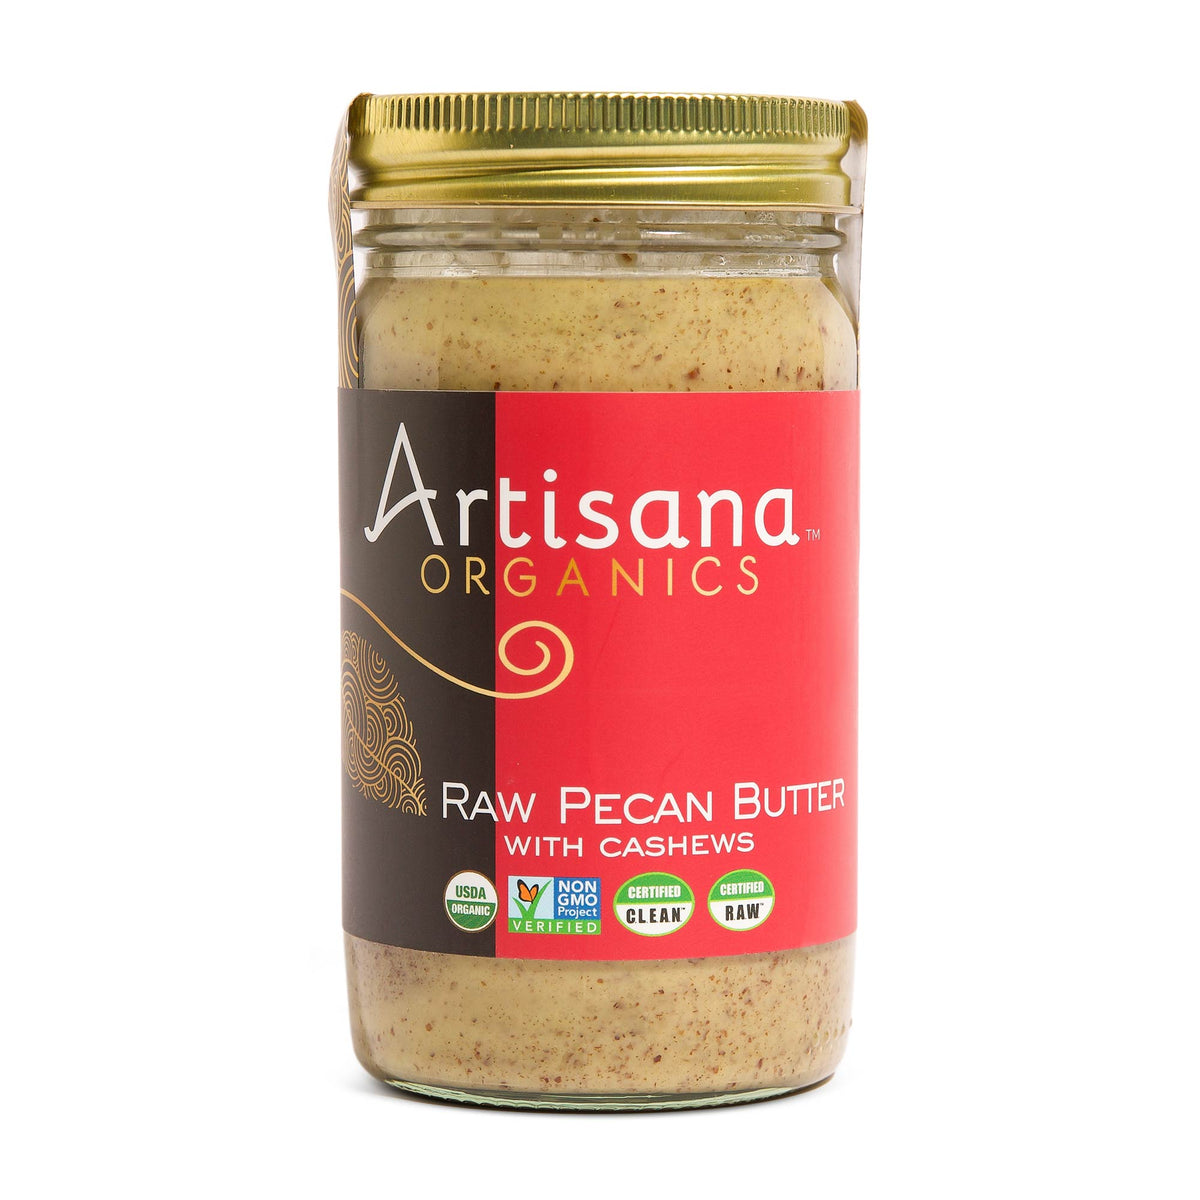 Artisana Raw Pecan Butter with Cashews 14 oz jar